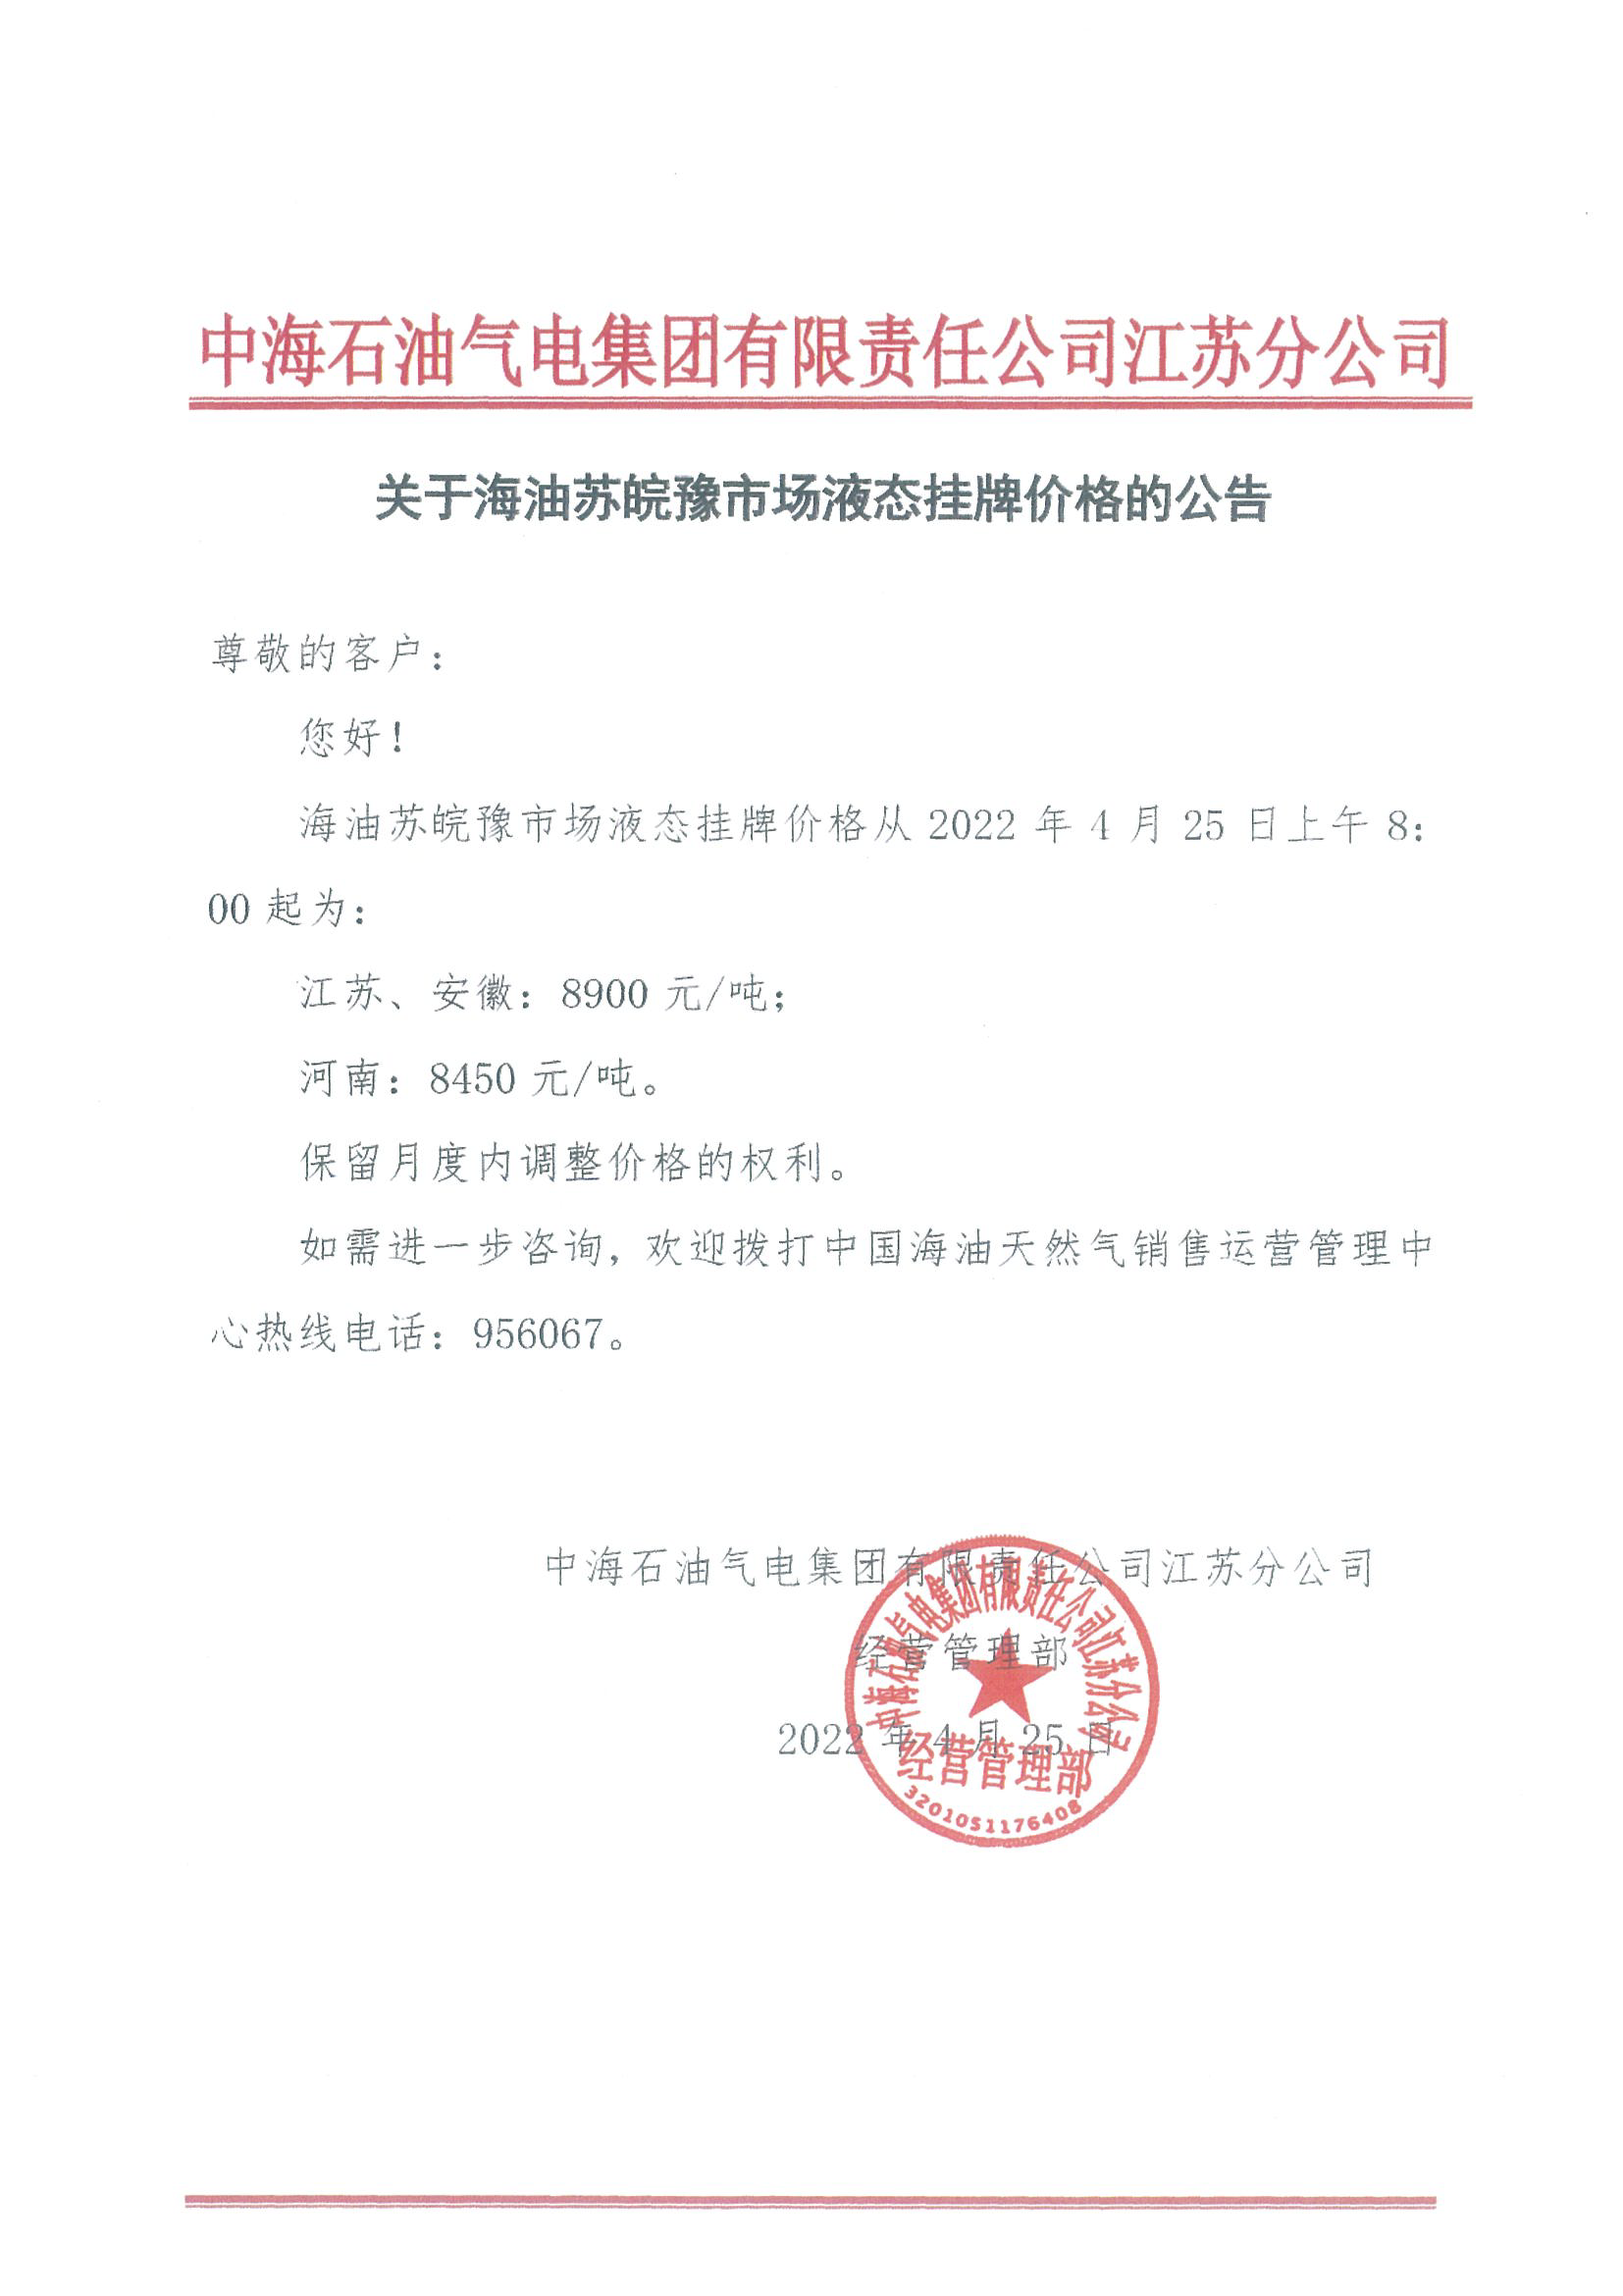 中海油江苏分公司关于4月25日华东苏皖市场价格调整公告.png